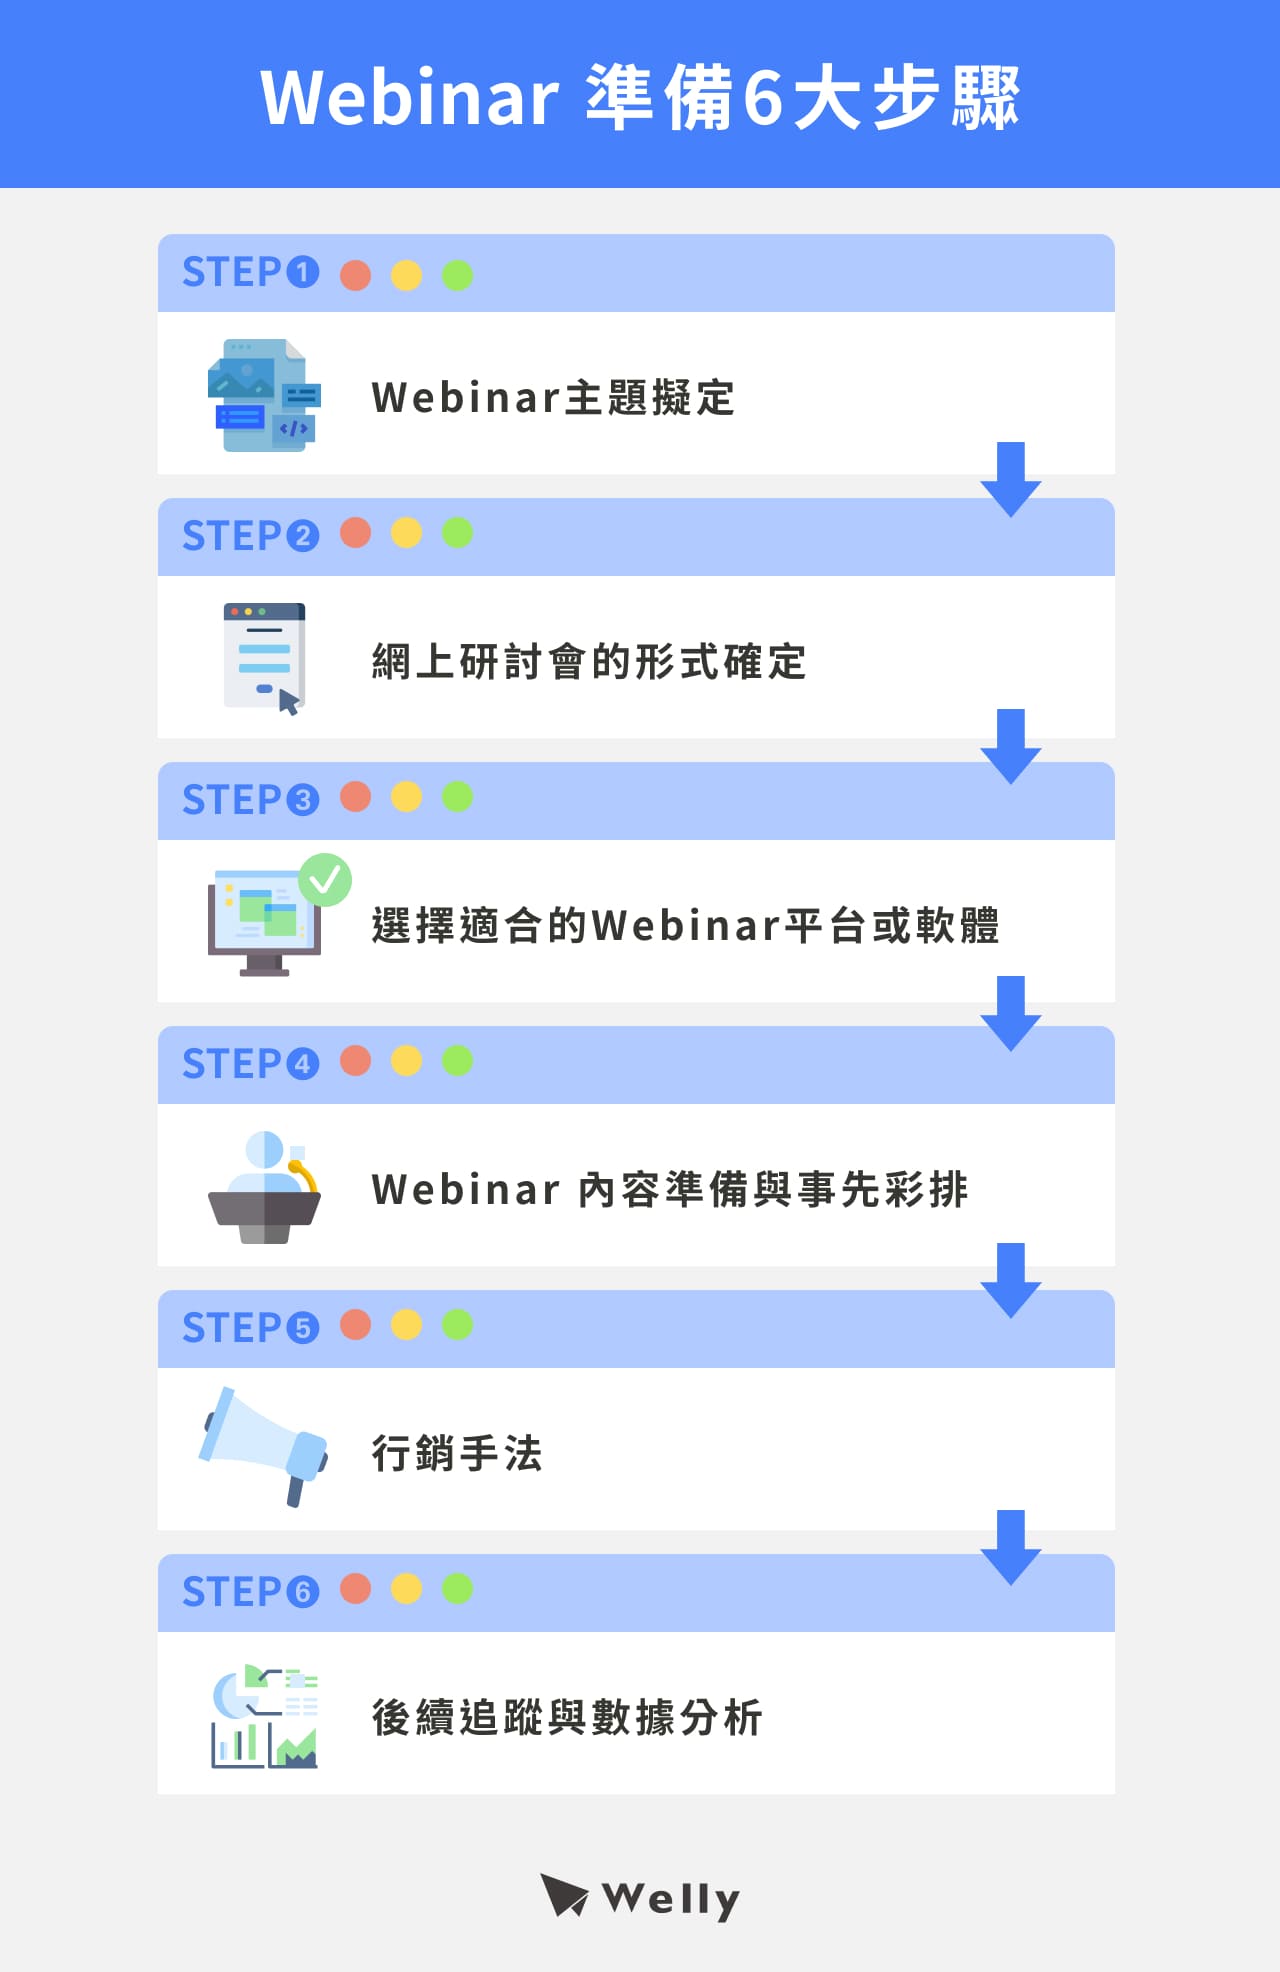 Webinar準備6大步驟：